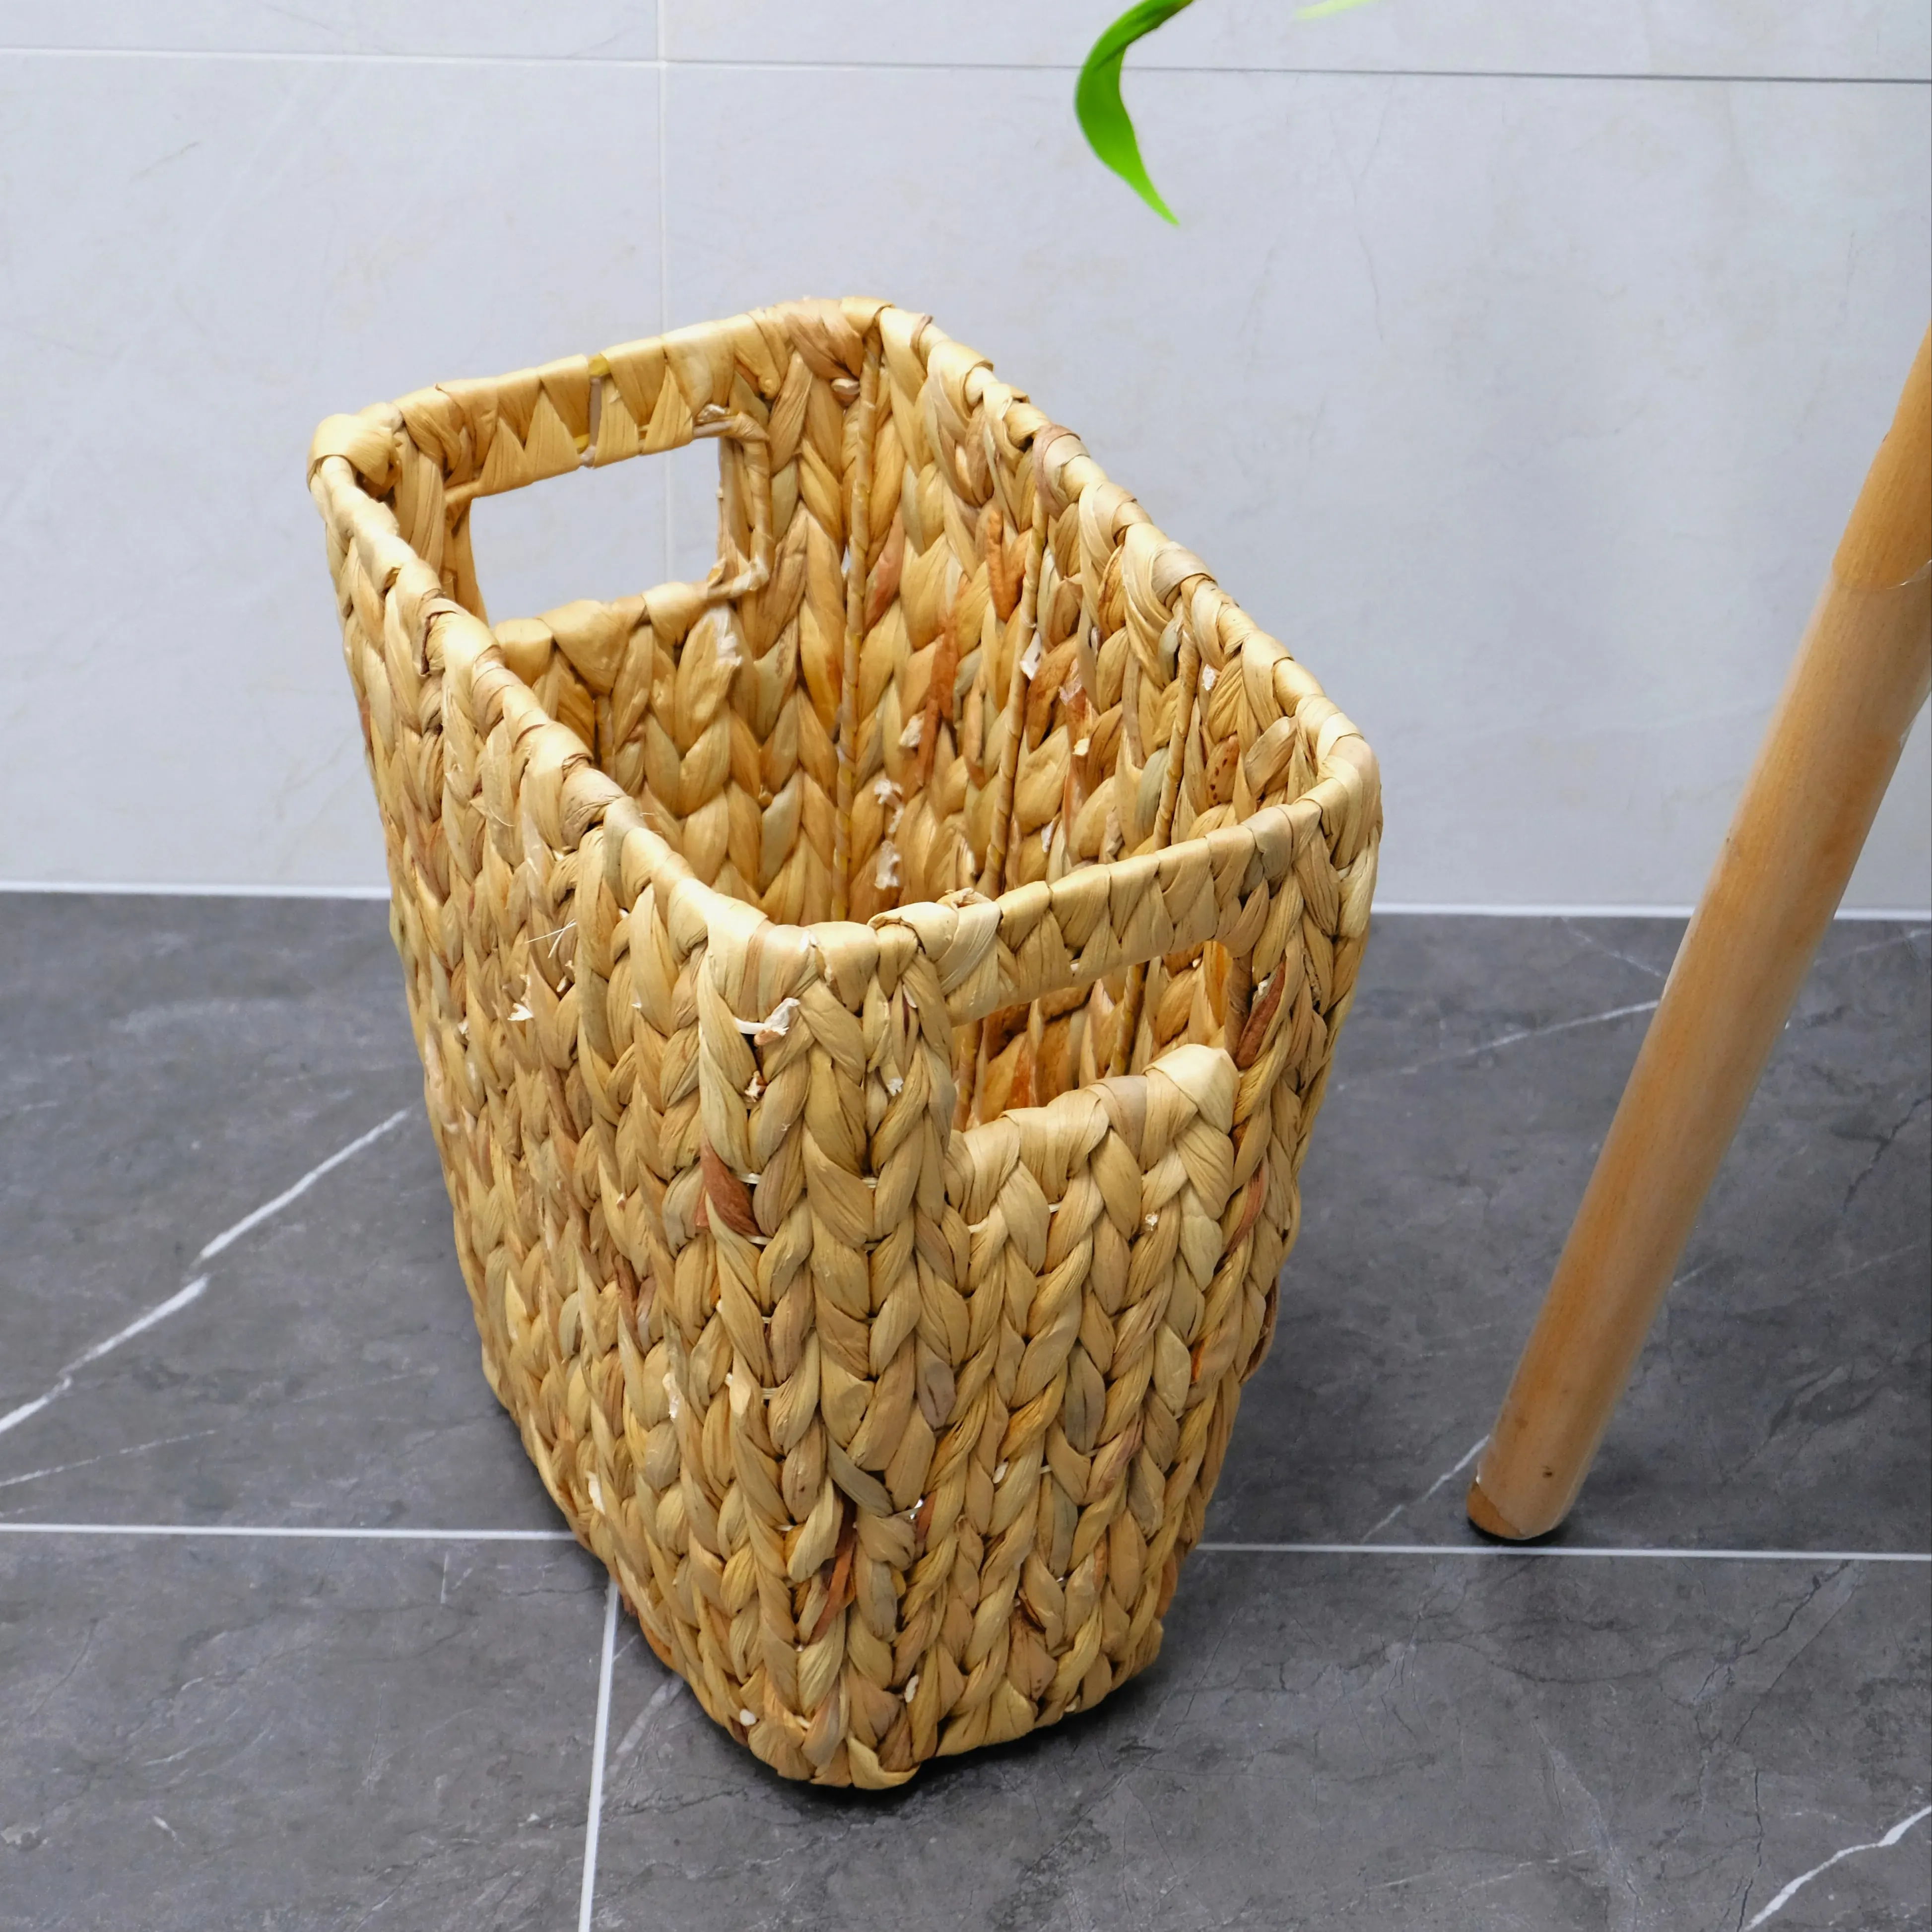 Vendita calda Viet Nam-Made cestino in tessuto di giacinto d'acqua riciclato e riposto per l'esportazione sfusa per vasi di fiori e fioriere